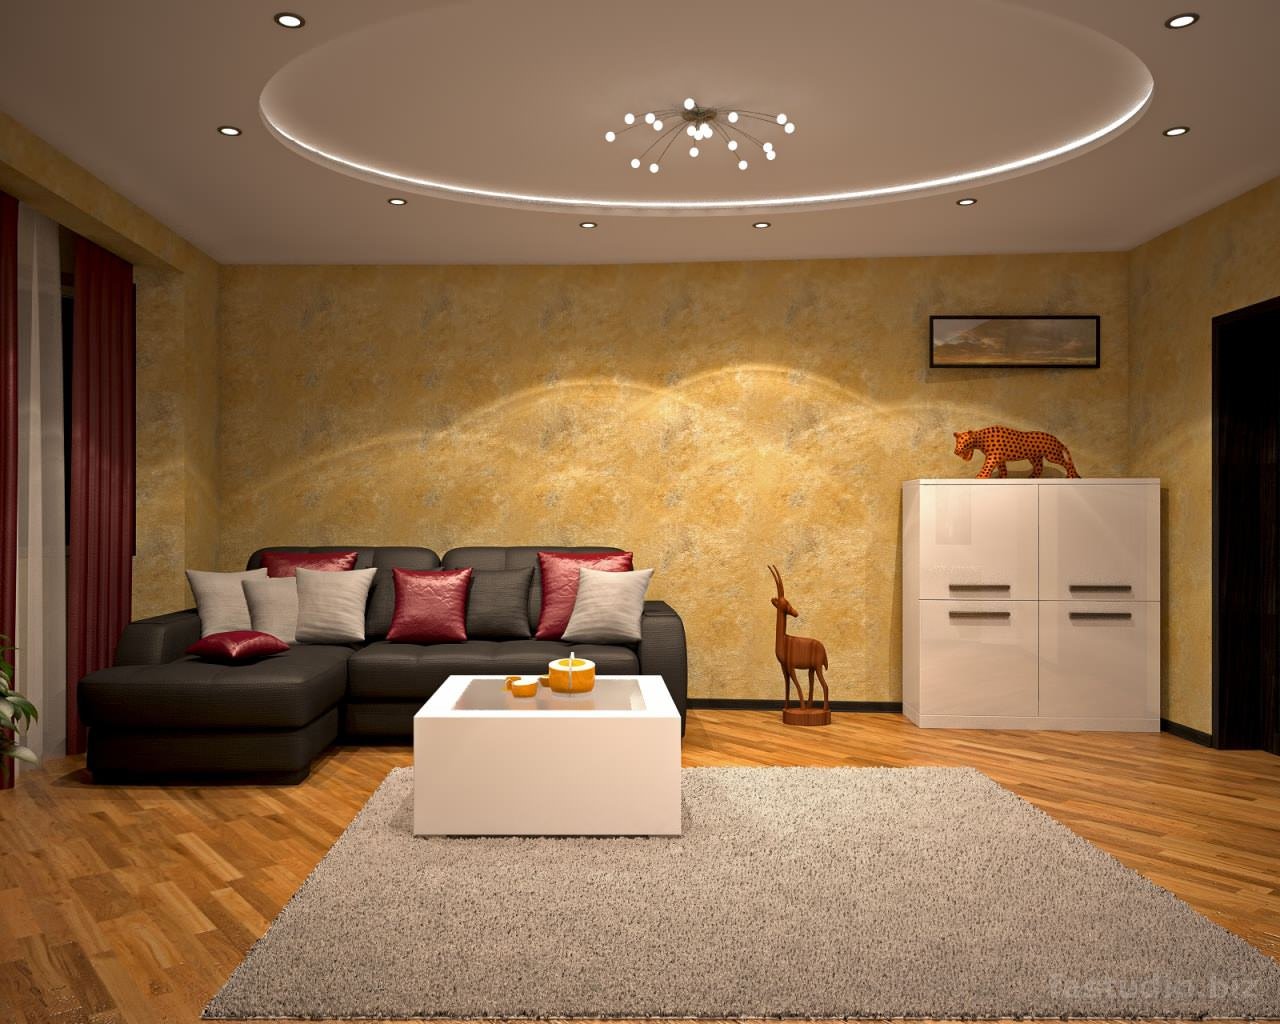 Современные потолки в квартирах - варианты, фото